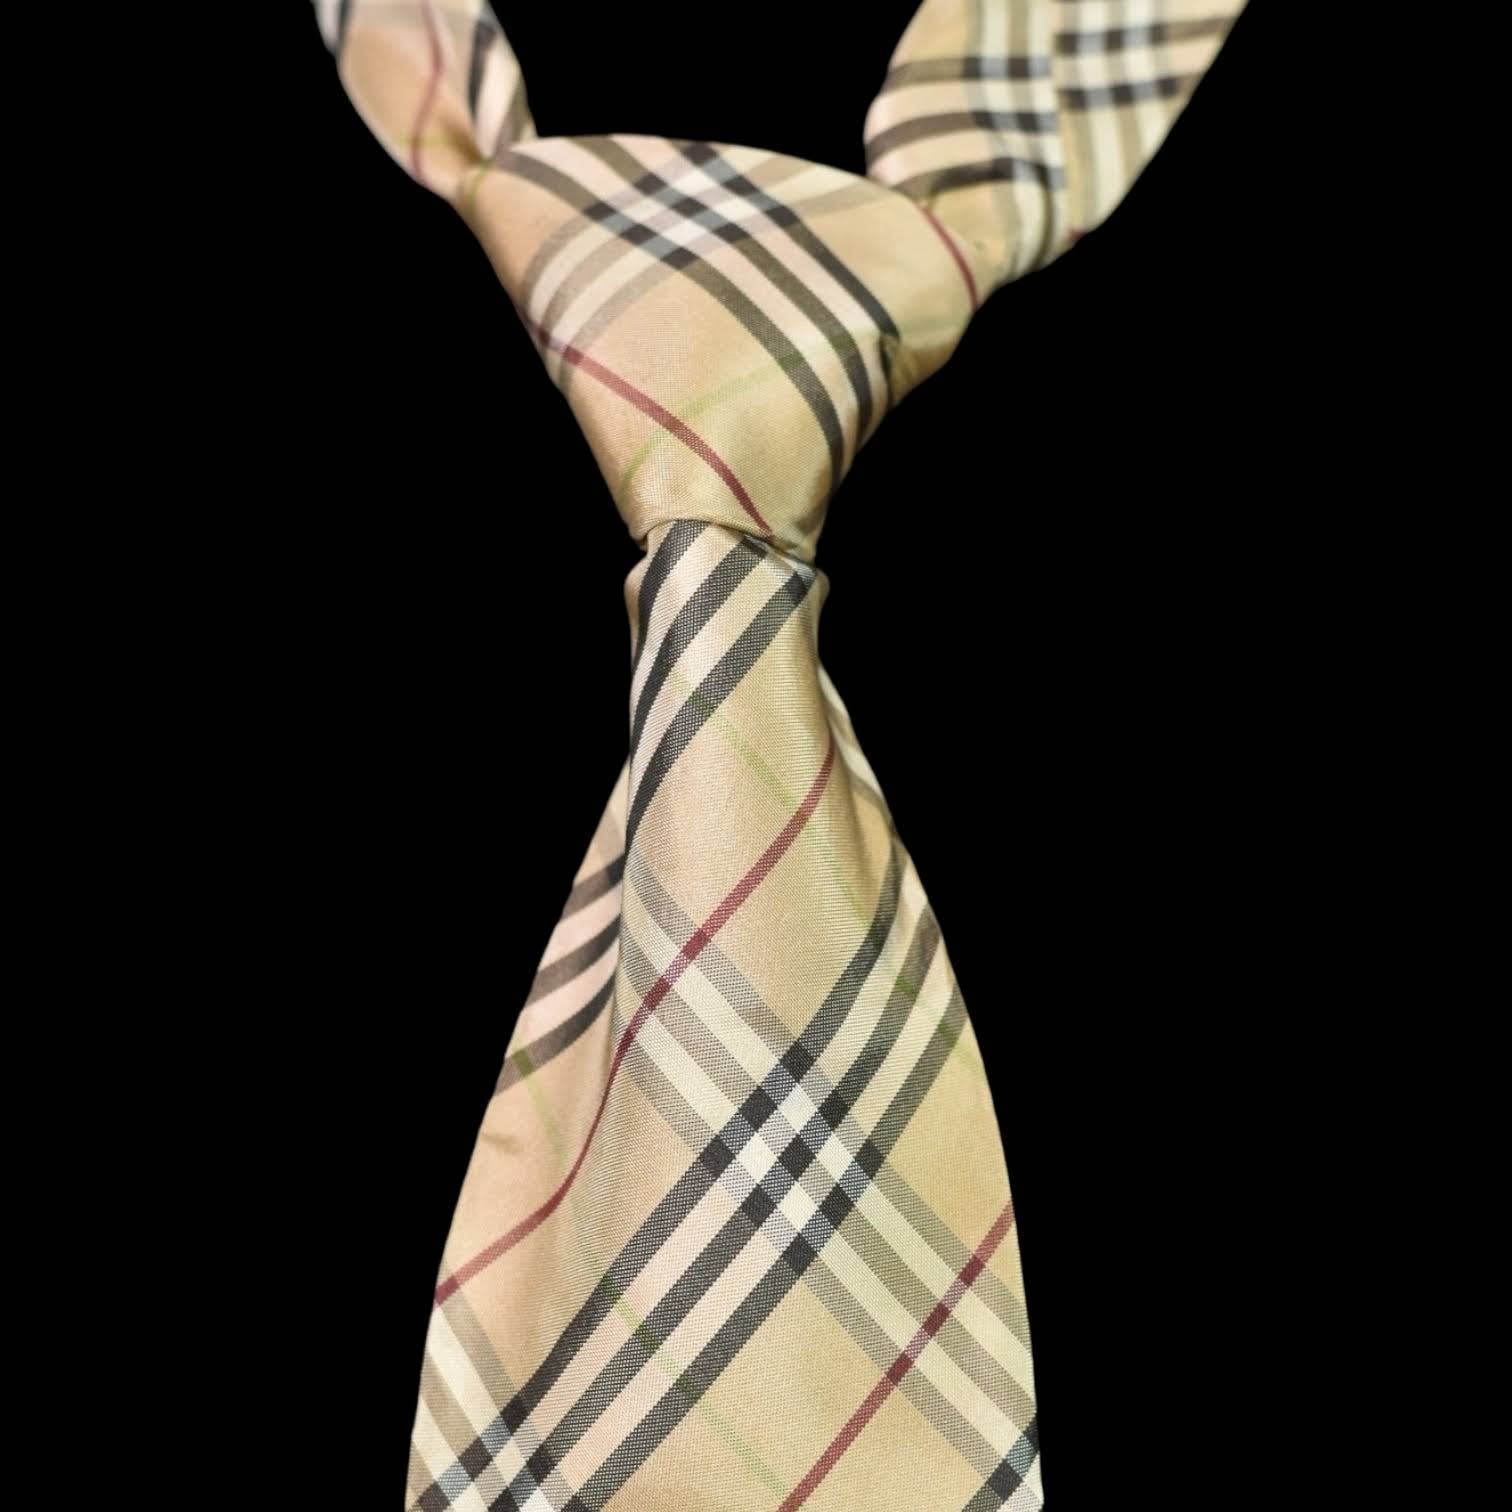 Burberry Silk Neck Tie Tan Nova Check Designer Plaid Black Classic Work Dress Mens Necktie